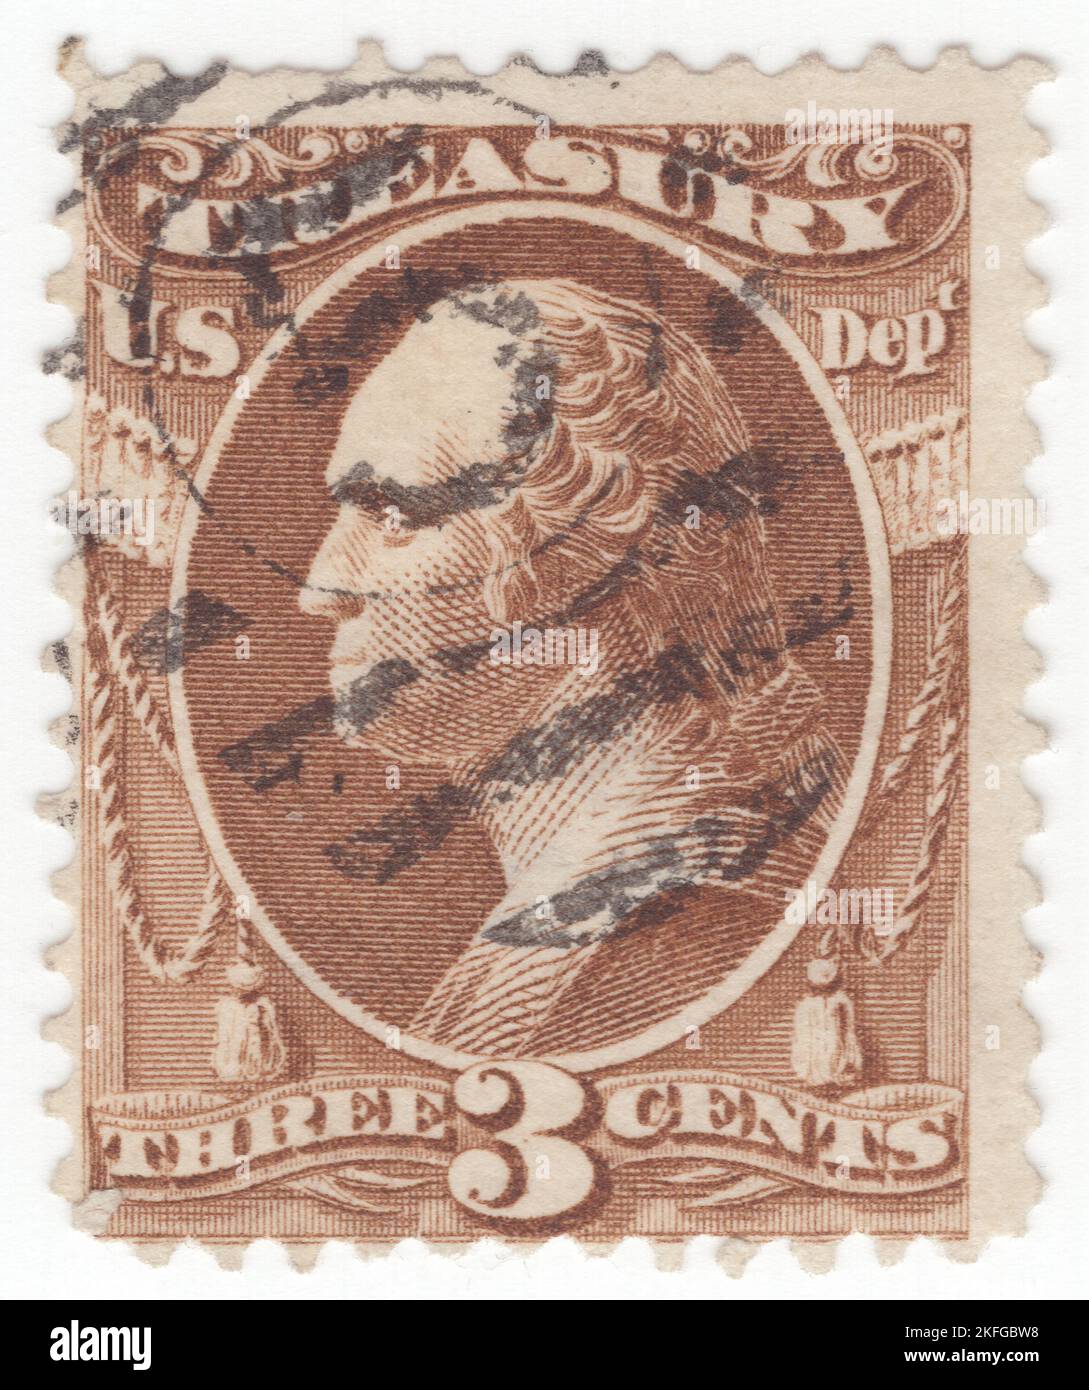 USA - 1879: Eine braune 3 Cent Briefmarke, die das Porträt von George Washington, dem ersten Präsidenten der Vereinigten Staaten, darstellt. Über dem Rahmen befindet sich ein Banner mit der Aufschrift 'TREASURY'. Das Frankierprivileg, das seit dem 1. Juli 1873 aufgehoben wurde, wurden diese Briefmarken für jeden der Exekutivabteilungen der Regierung zur Vorauszahlung des Postaufpreises in offiziellen Angelegenheiten bereitgestellt. Die ersten strafmarken wurden 1877 zugelassen, und ihre erweiterte Verwendung nach 1879 reduzierte den Bedarf an offiziellen Marken, deren Verwendung am 5. Juli 1884 endgültig aufgehoben wurde Stockfoto